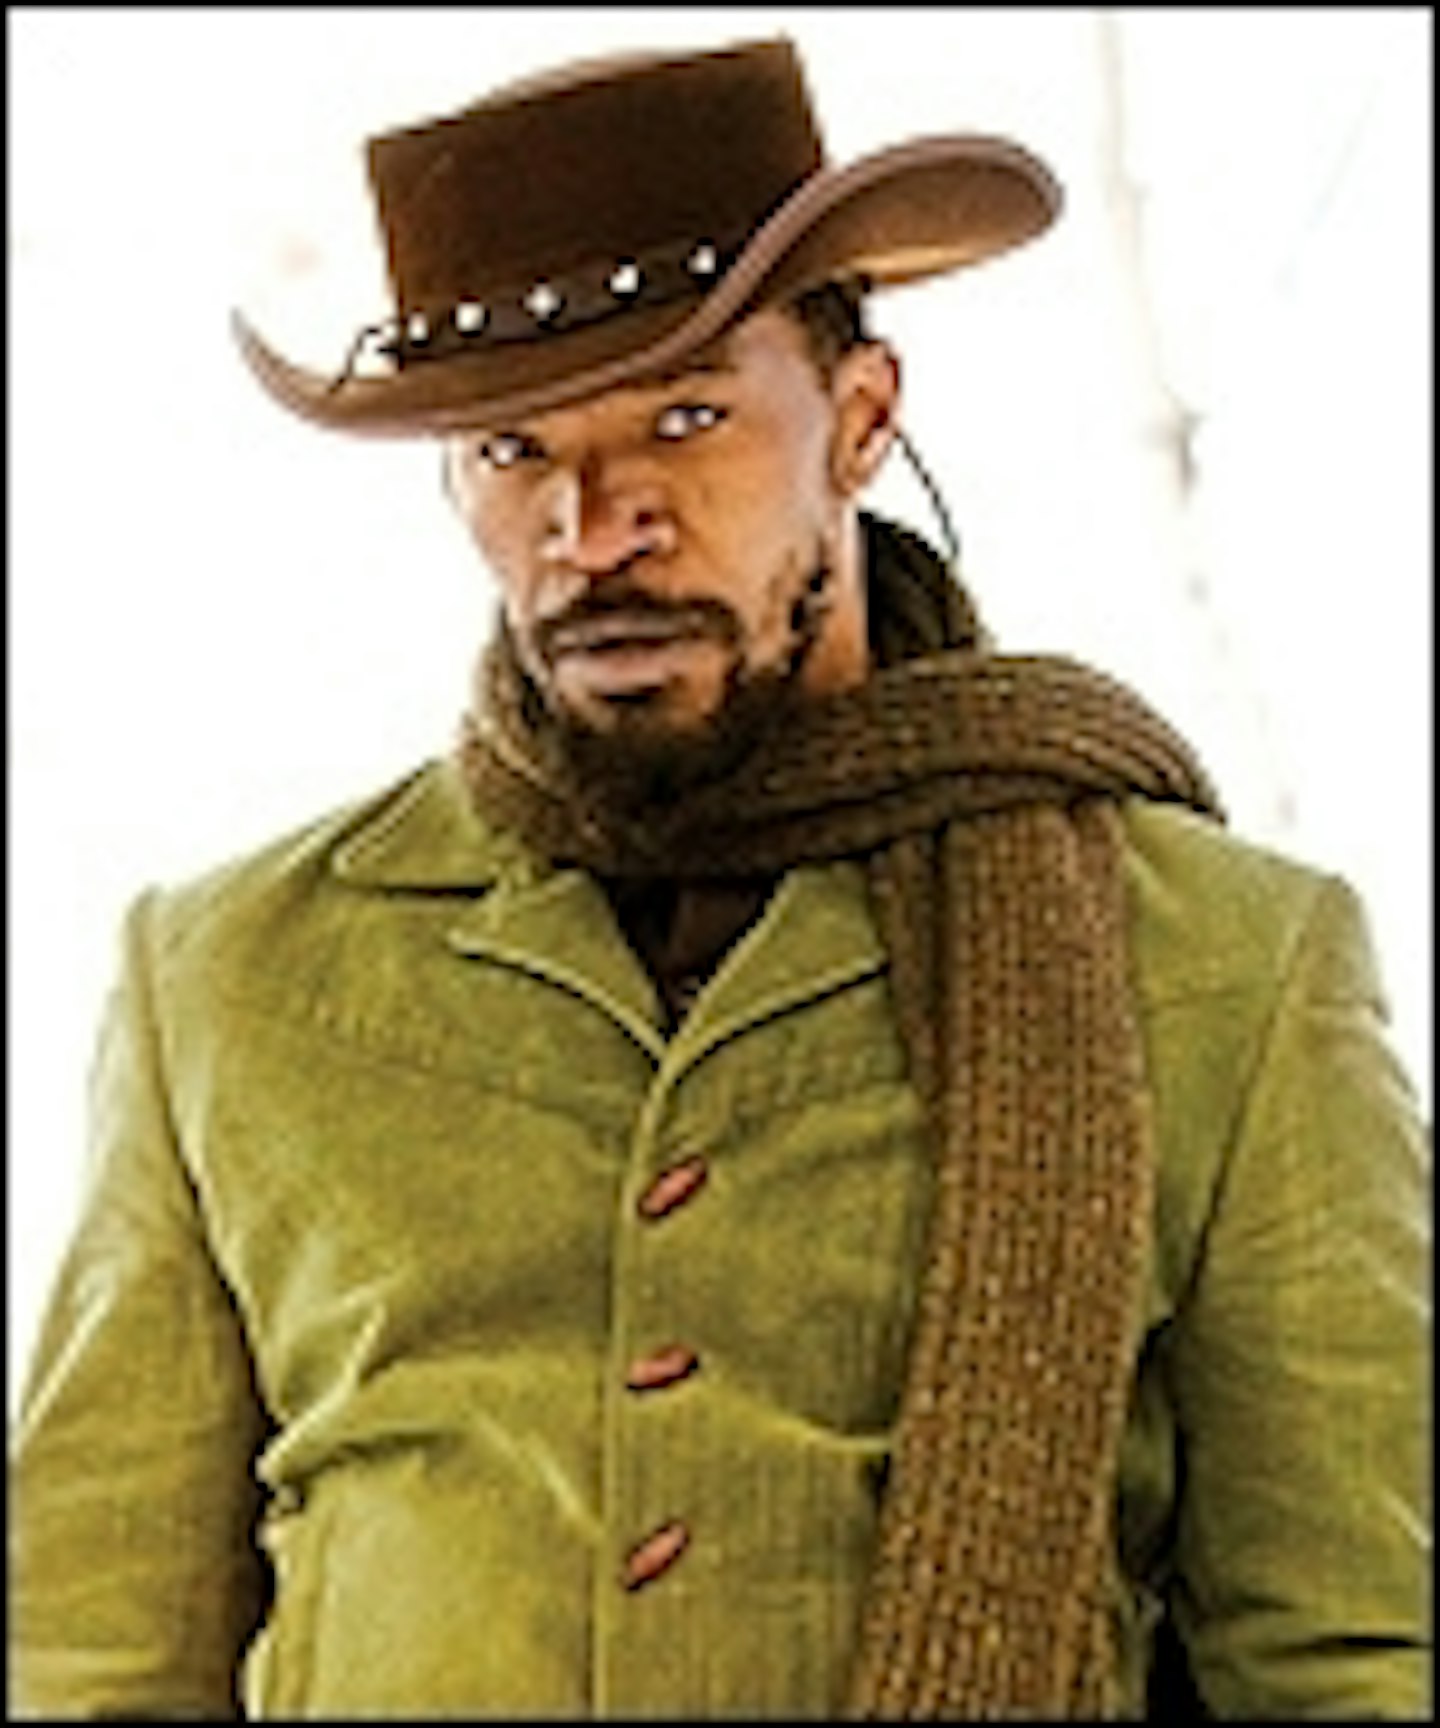 Django Unchained Trailer Arrives